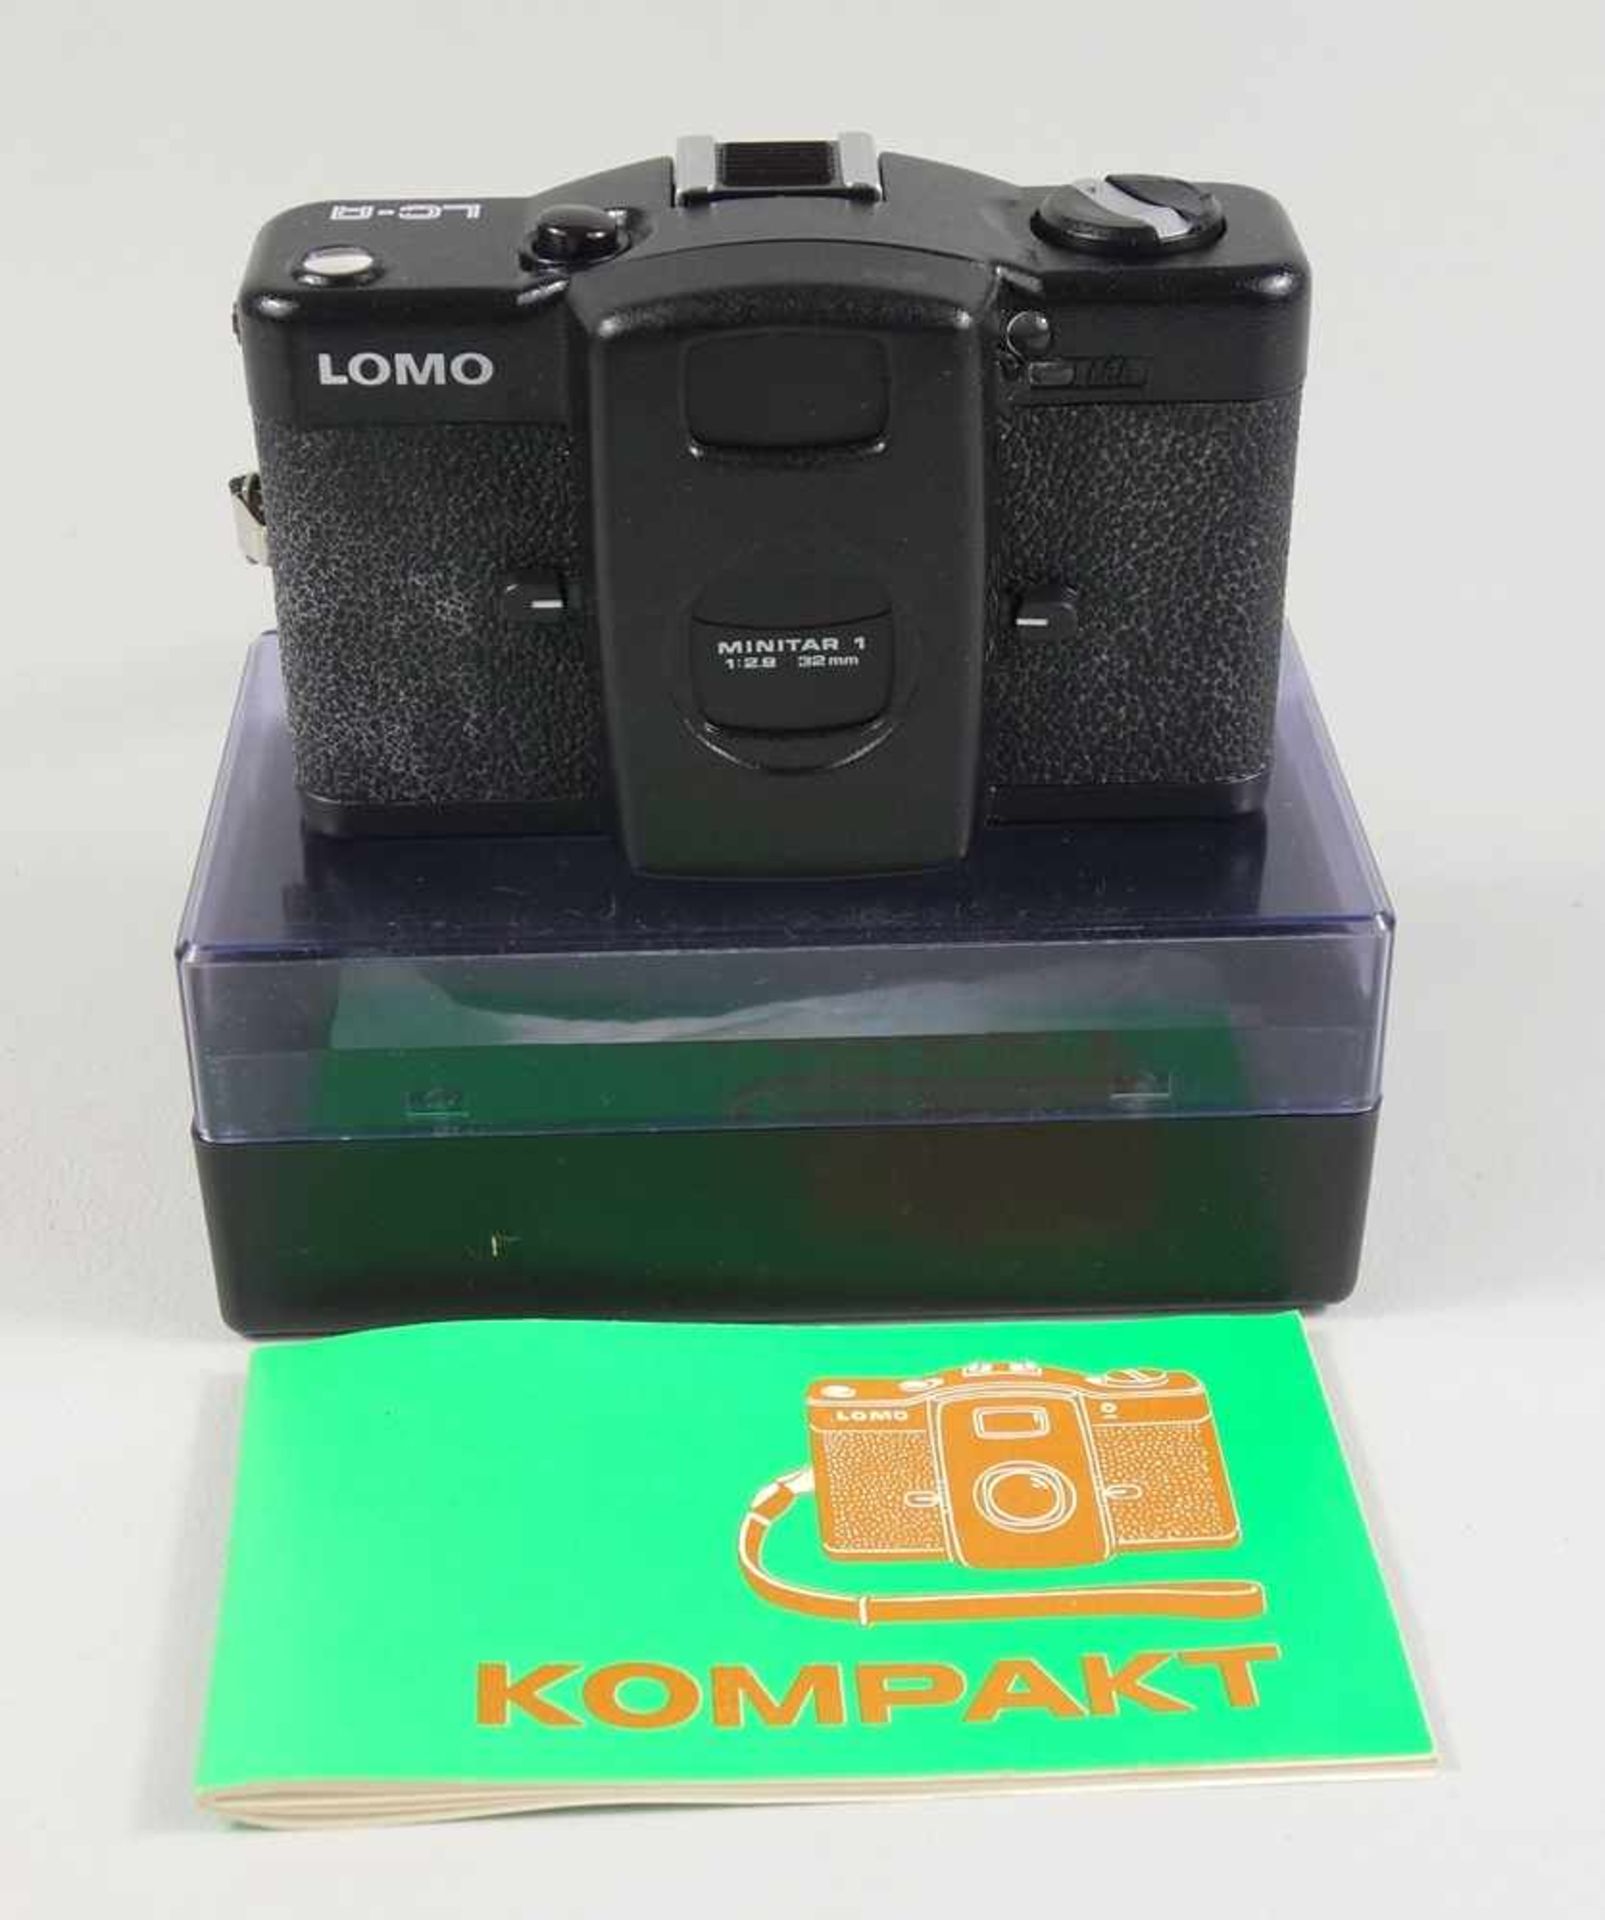 4 Fotoapparate und Zubehör; LOMO Kompakt Automat MINITAR 1, 1:28, 32mm, mit Bedienungsanleitung, - Image 2 of 5